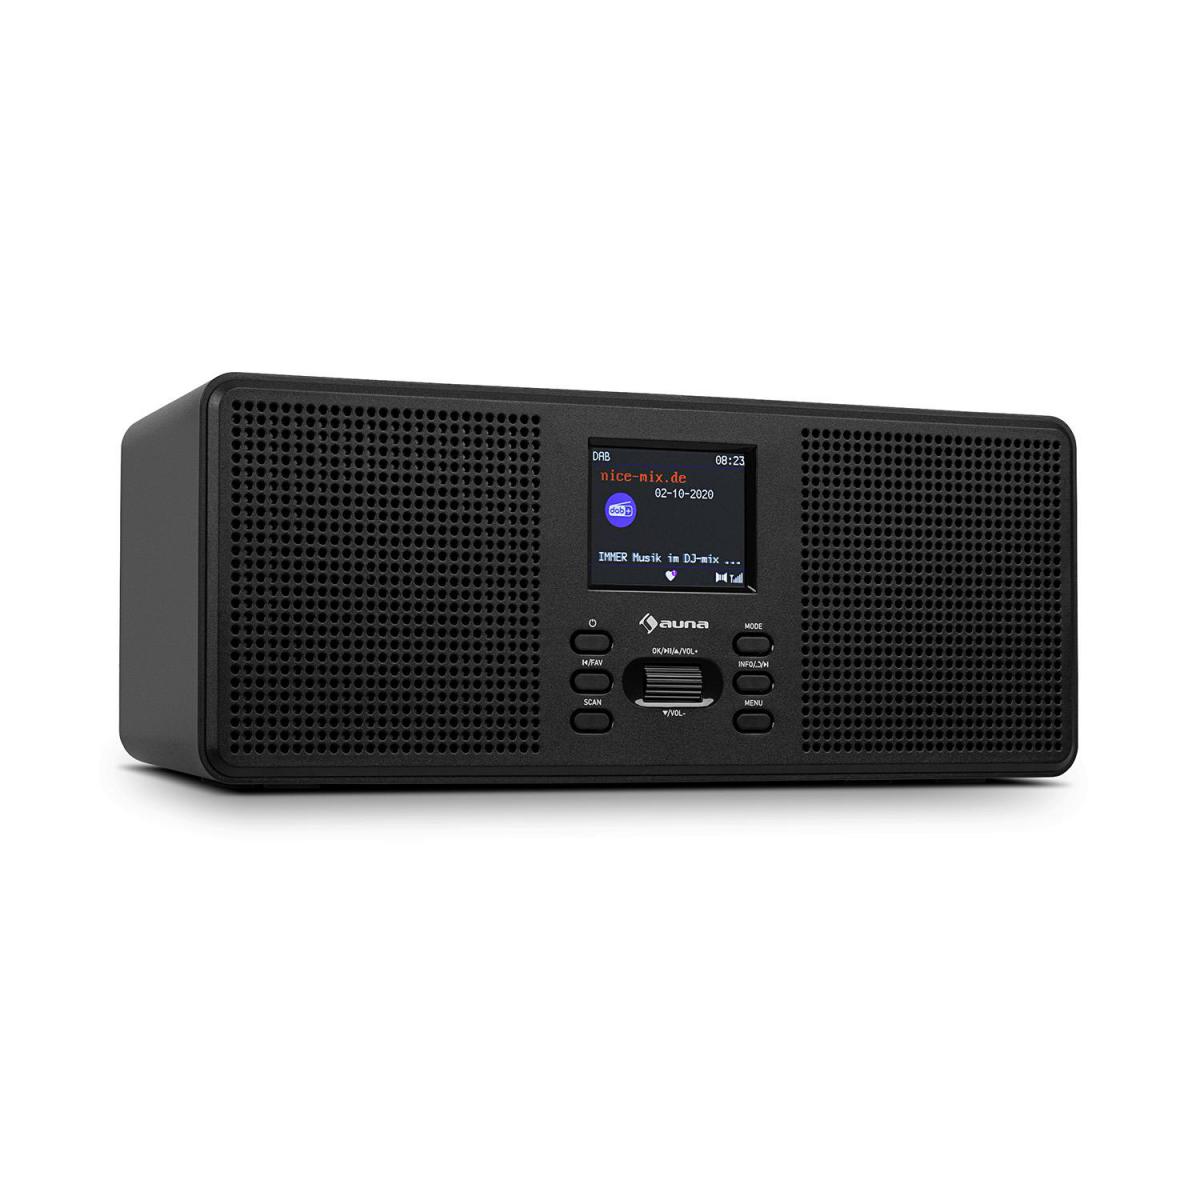 Auna - auna Commuter ST - Radio numérique avec tuner DAB+/FM , interface Bluetooth , écran TFT couleur 2,4" - Noir - Radio